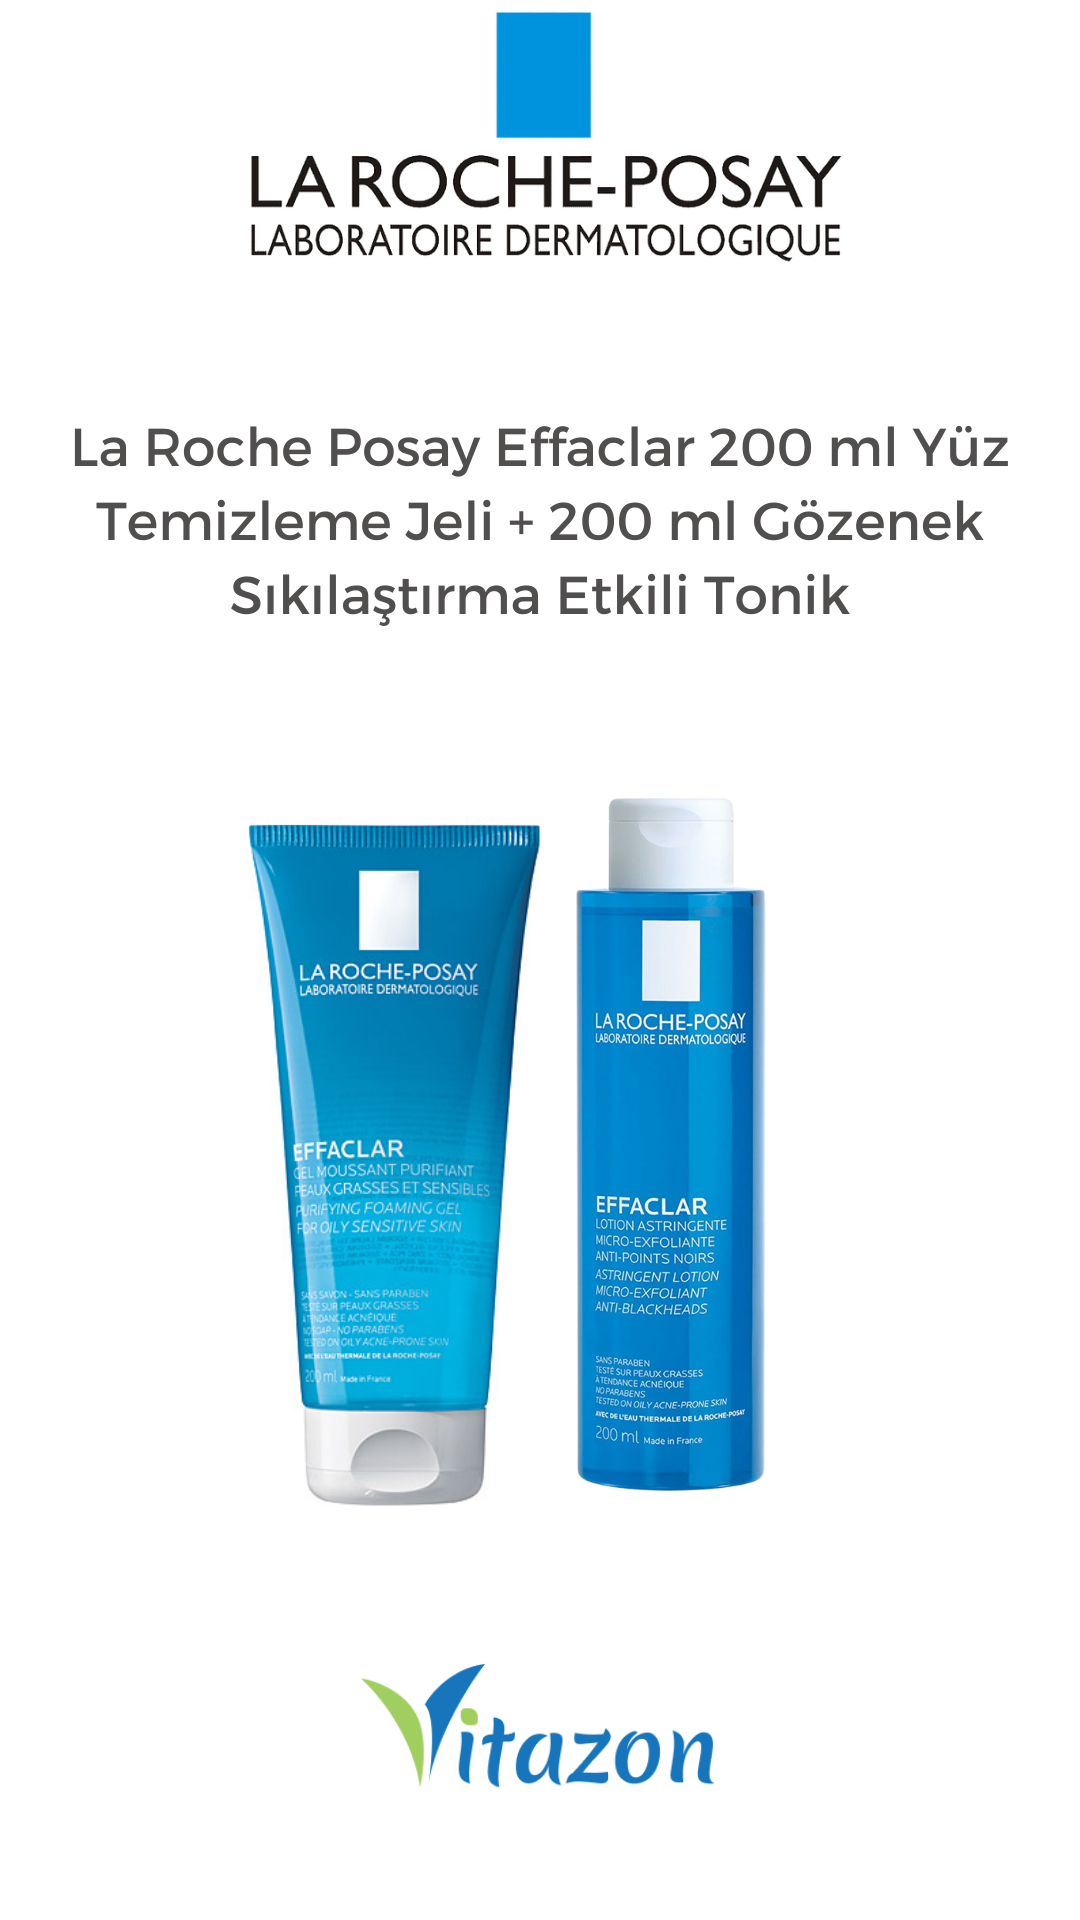 La Roche Posay Effaclar 200 ml Yüz Temizleme Jeli + 200 ml Gözenek Sıkılaştırma Etkili Tonik